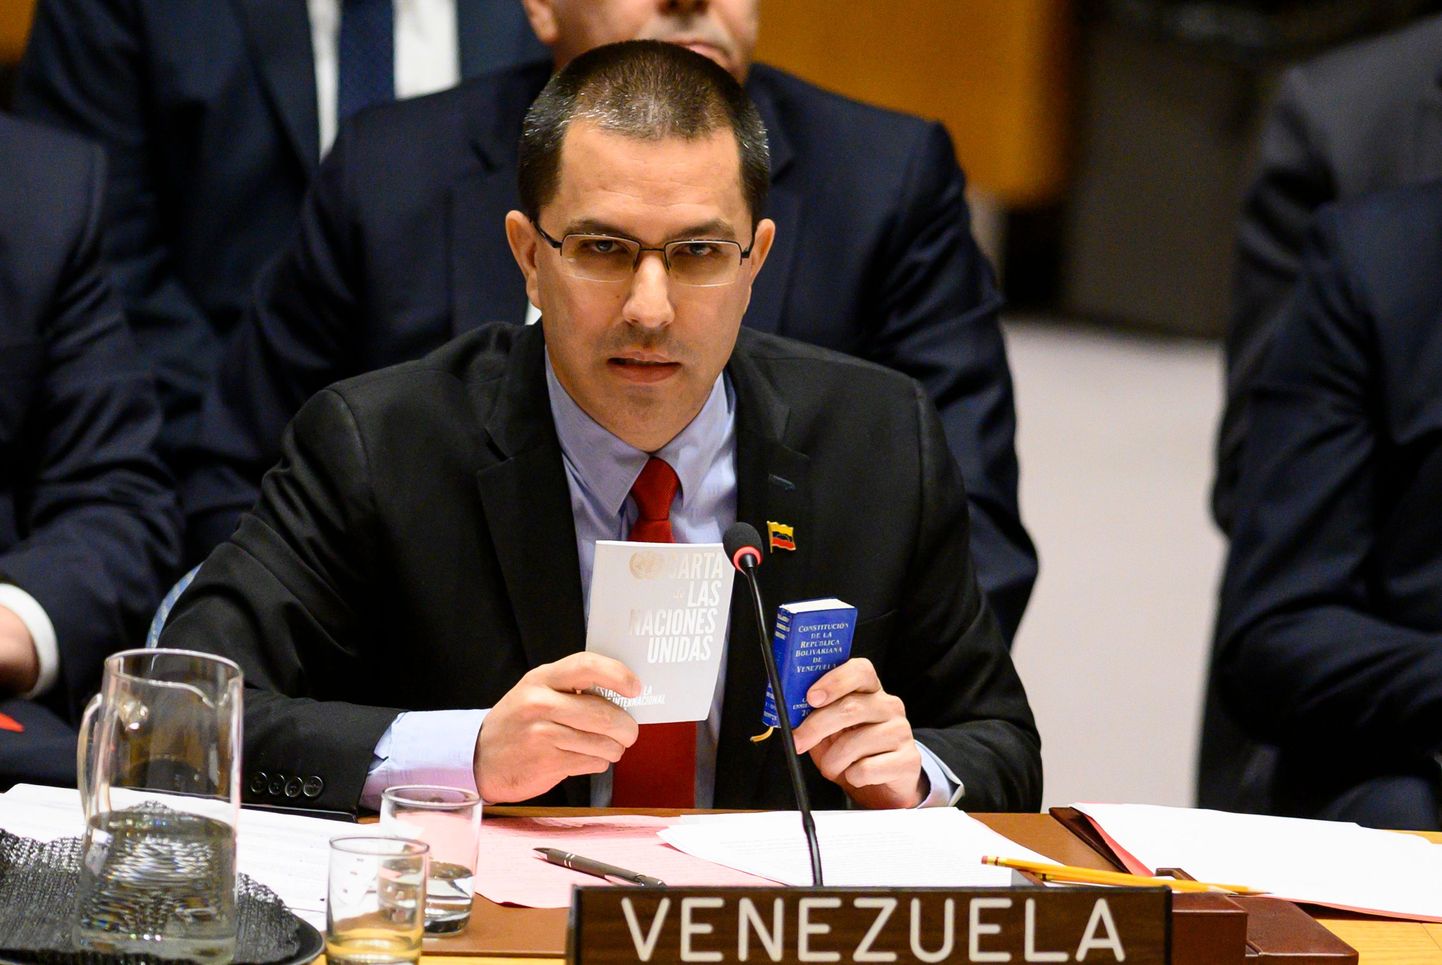 Venezuela välisminister Jorge Arreaza esinemas 26. jaanuaril ÜRO Julgeolekunõukogus Venezuela kriisi arutamisel.